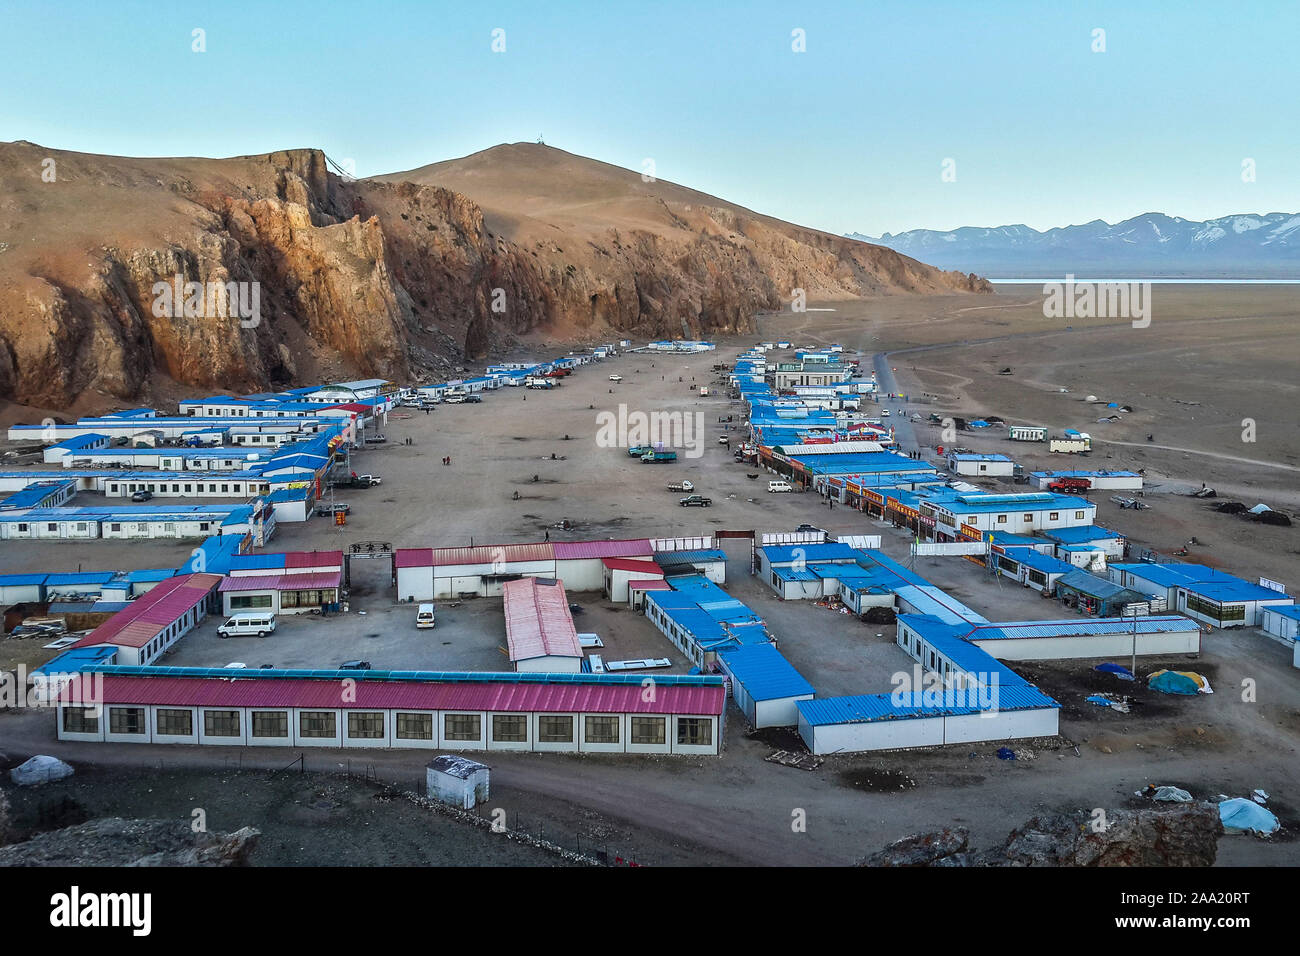 Contenitore-come alloggio per turisti e pellegrini al Lago Namtso, un santo Salt Lake nel Tibet. Namtso è il tibetano per 'Heavenly :lago". Foto Stock